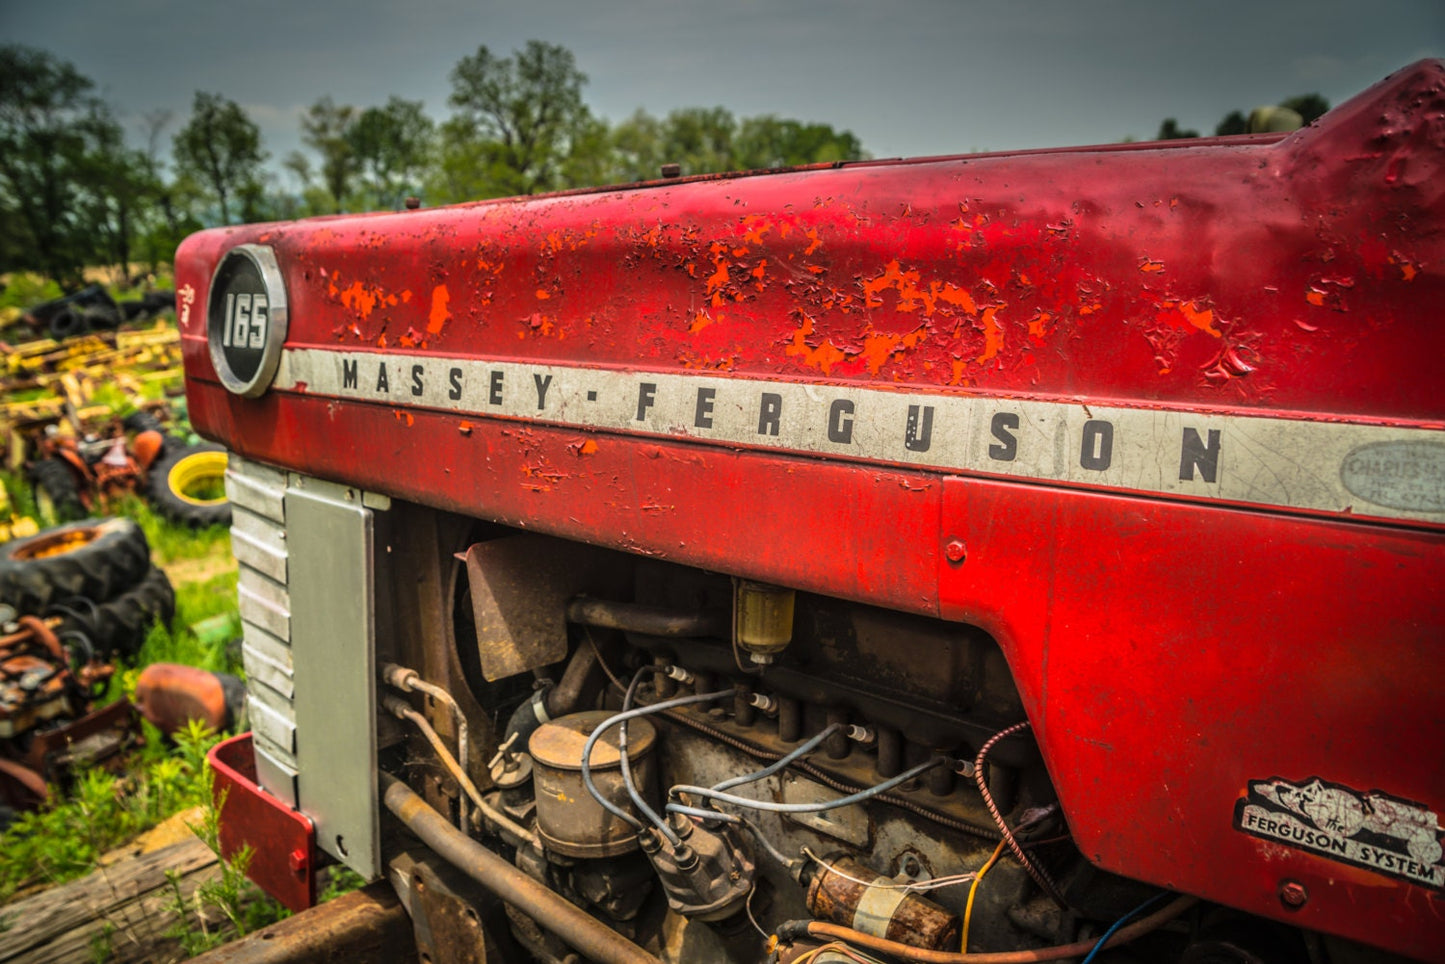 Massey Ferguson Tractor Photograph - Tractor Photography, Americana Photography, Farmhouse Photography, Metal Wall Art, Office Wall Art